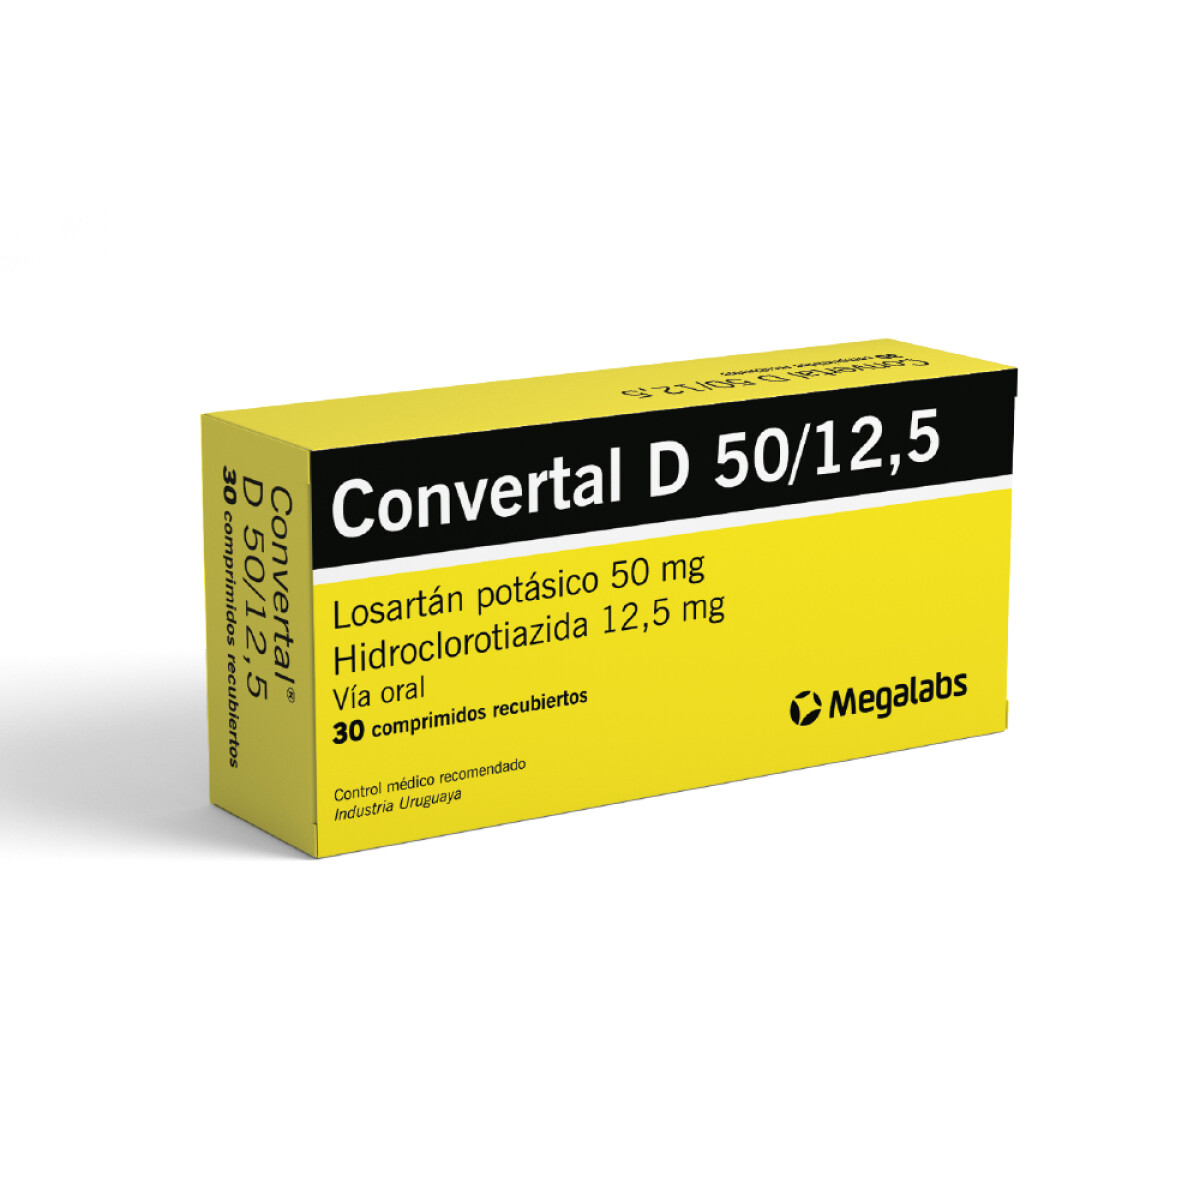 Convertal D 50 Mg./12.5 Mg. 30 Comrimidos 